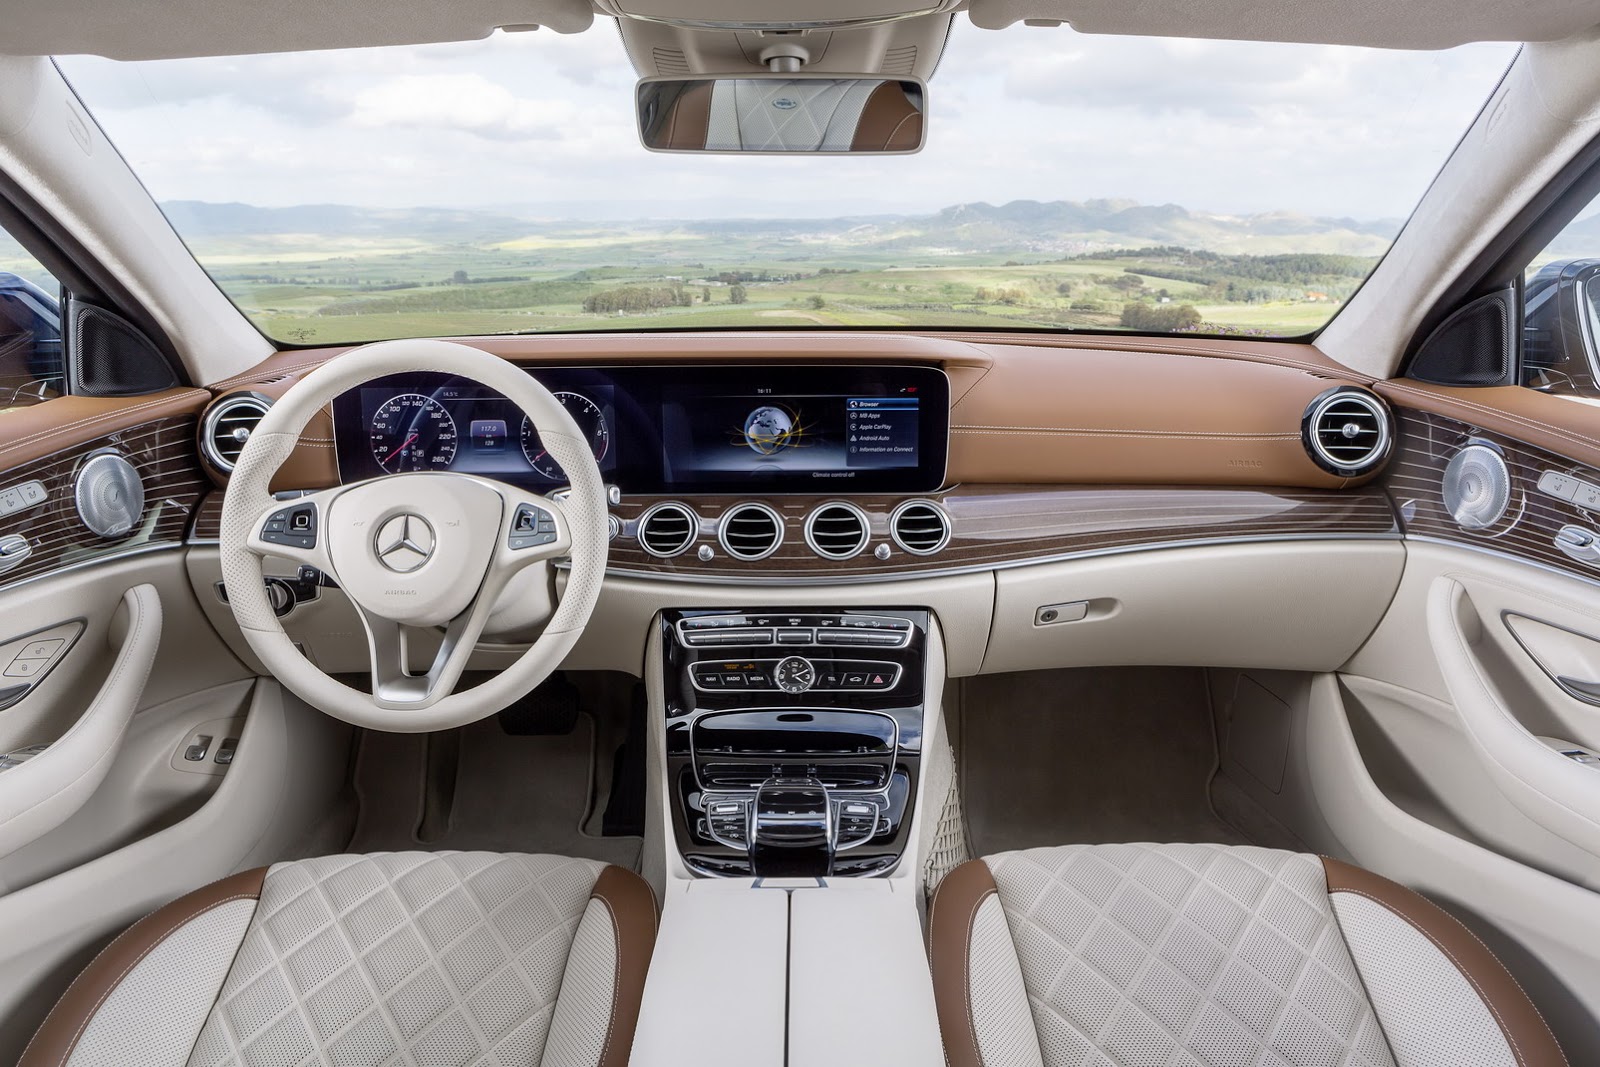 
Dự kiến, hãng Mercedes-Benz sẽ bắt đầu nhận đơn đặt hàng E-Class Estate 2017 tại thị trường châu Âu vào cuối mùa hè năm nay. Những chiếc đầu tiên sẽ được giao vào tay khách hàng vào cuối năm.
